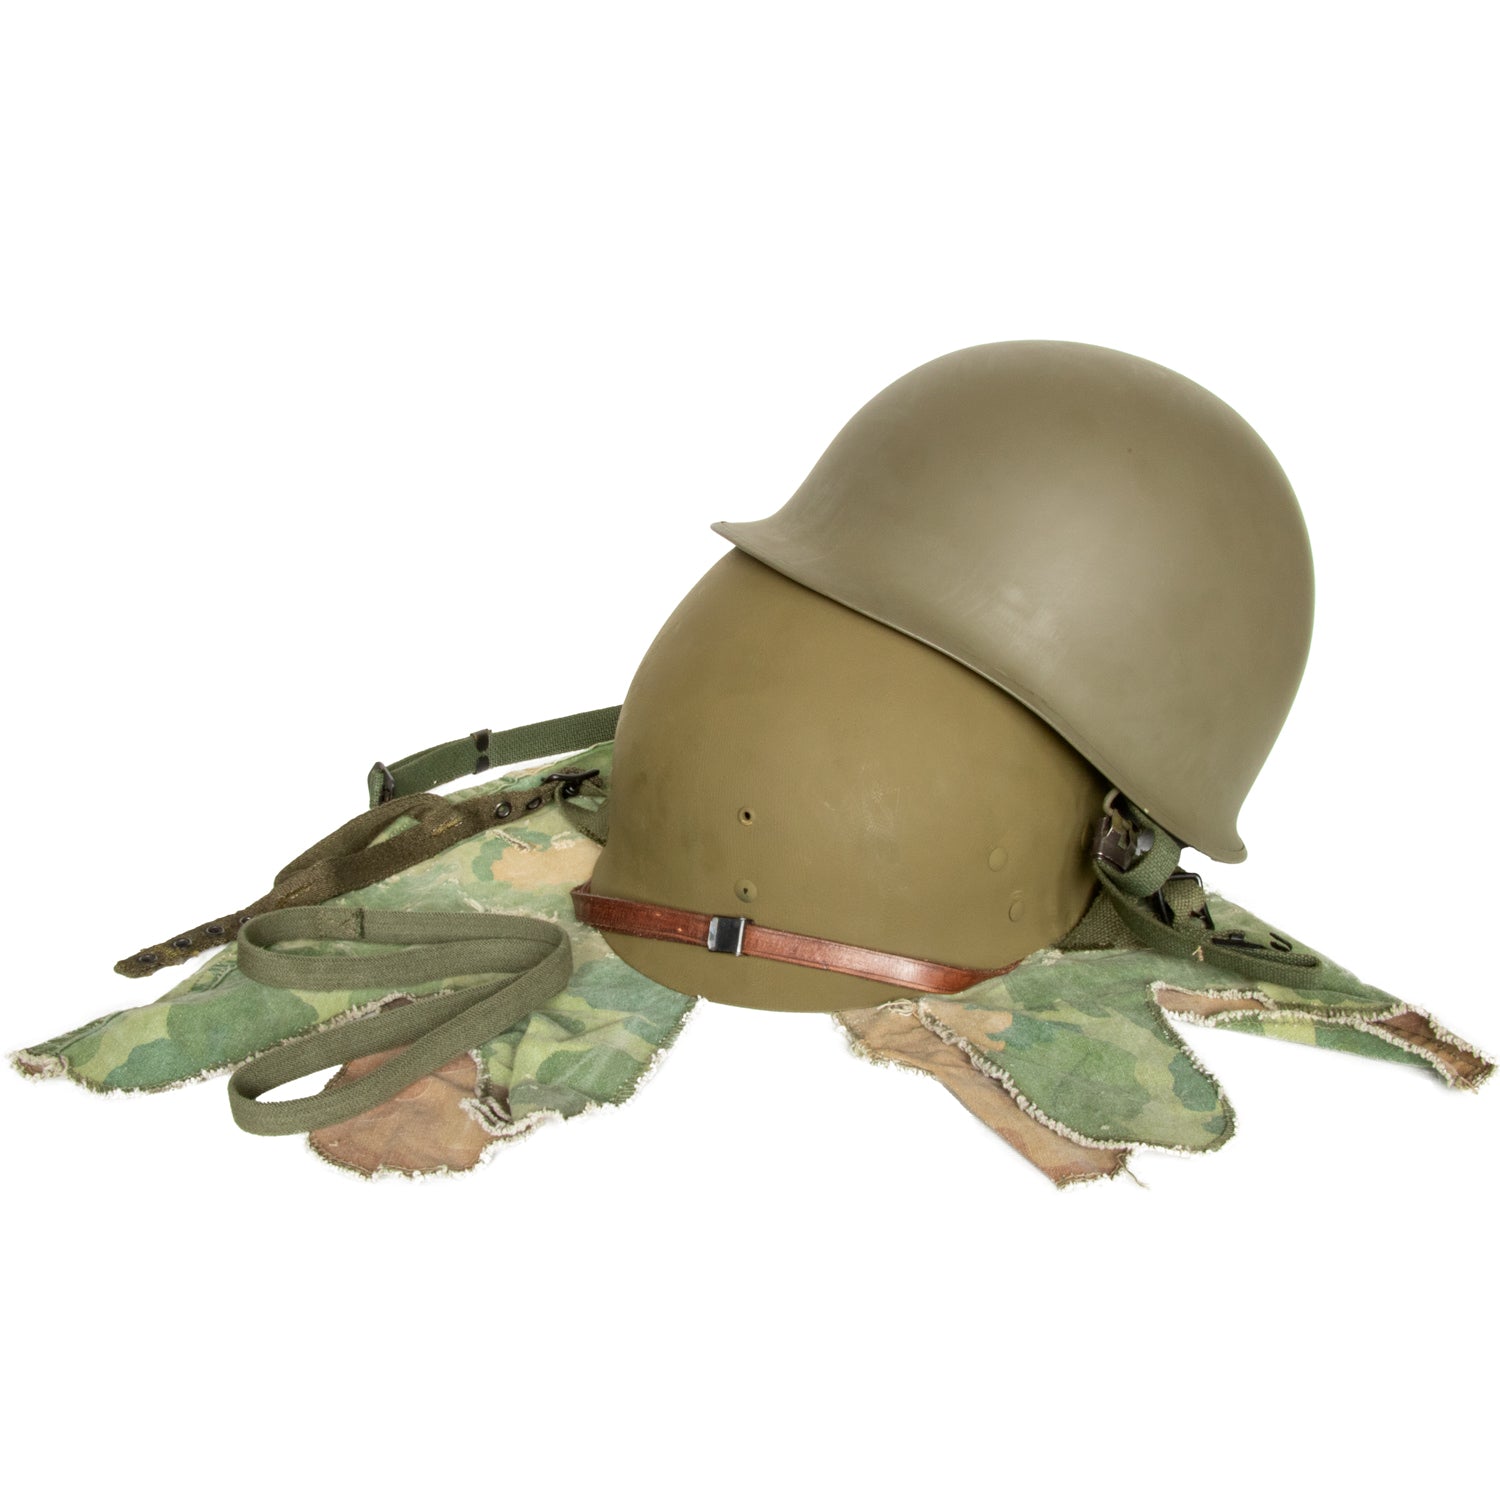 Casque Complet Vietnam Parachutiste Edition Limitée précoce vue complète du casque et du sous casque